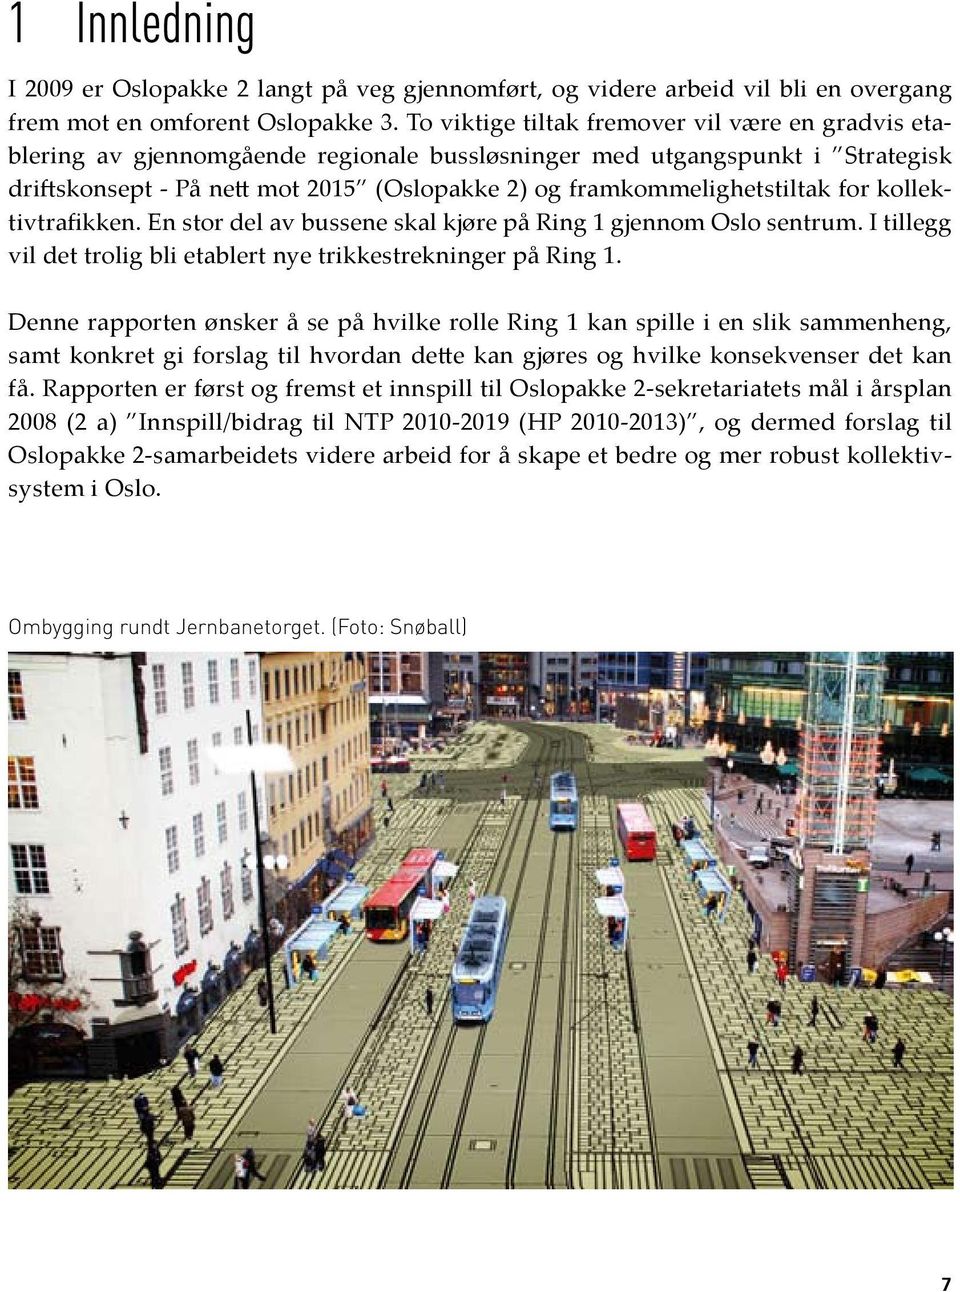 for kollektivtrafikken. En stor del av bussene skal kjøre på Ring 1 gjennom Oslo sentrum. I tillegg vil det trolig bli etablert nye trikkestrekninger på Ring 1.